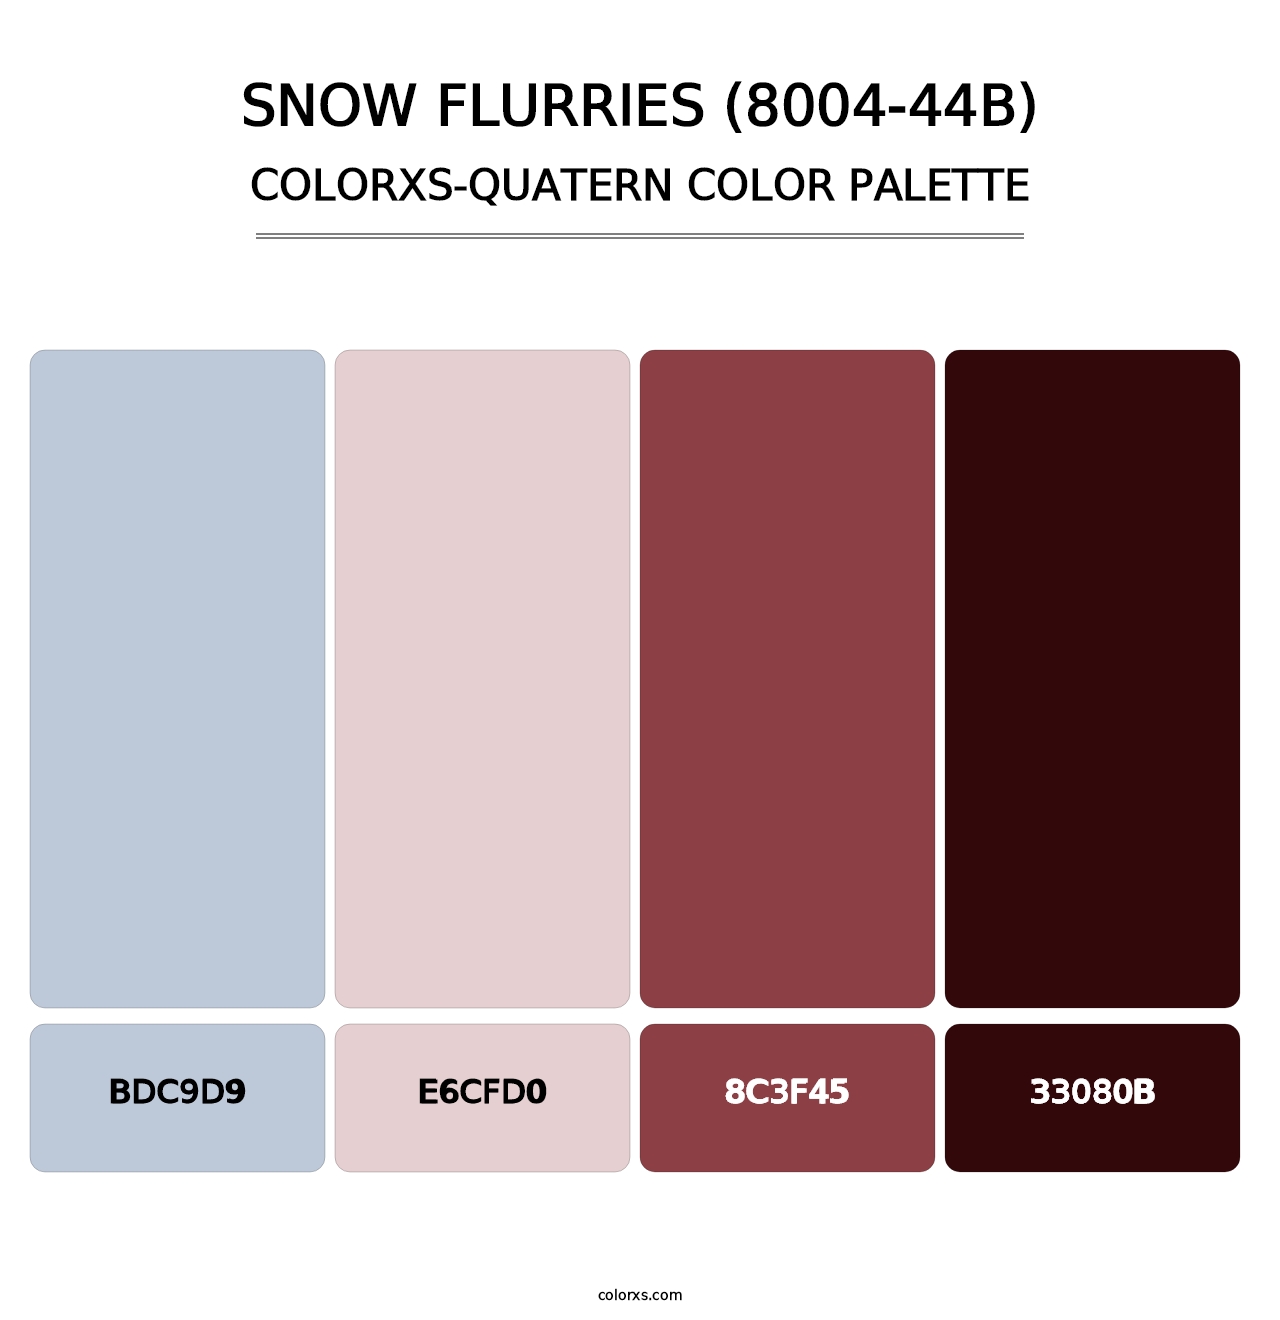 Snow Flurries (8004-44B) - Colorxs Quatern Palette